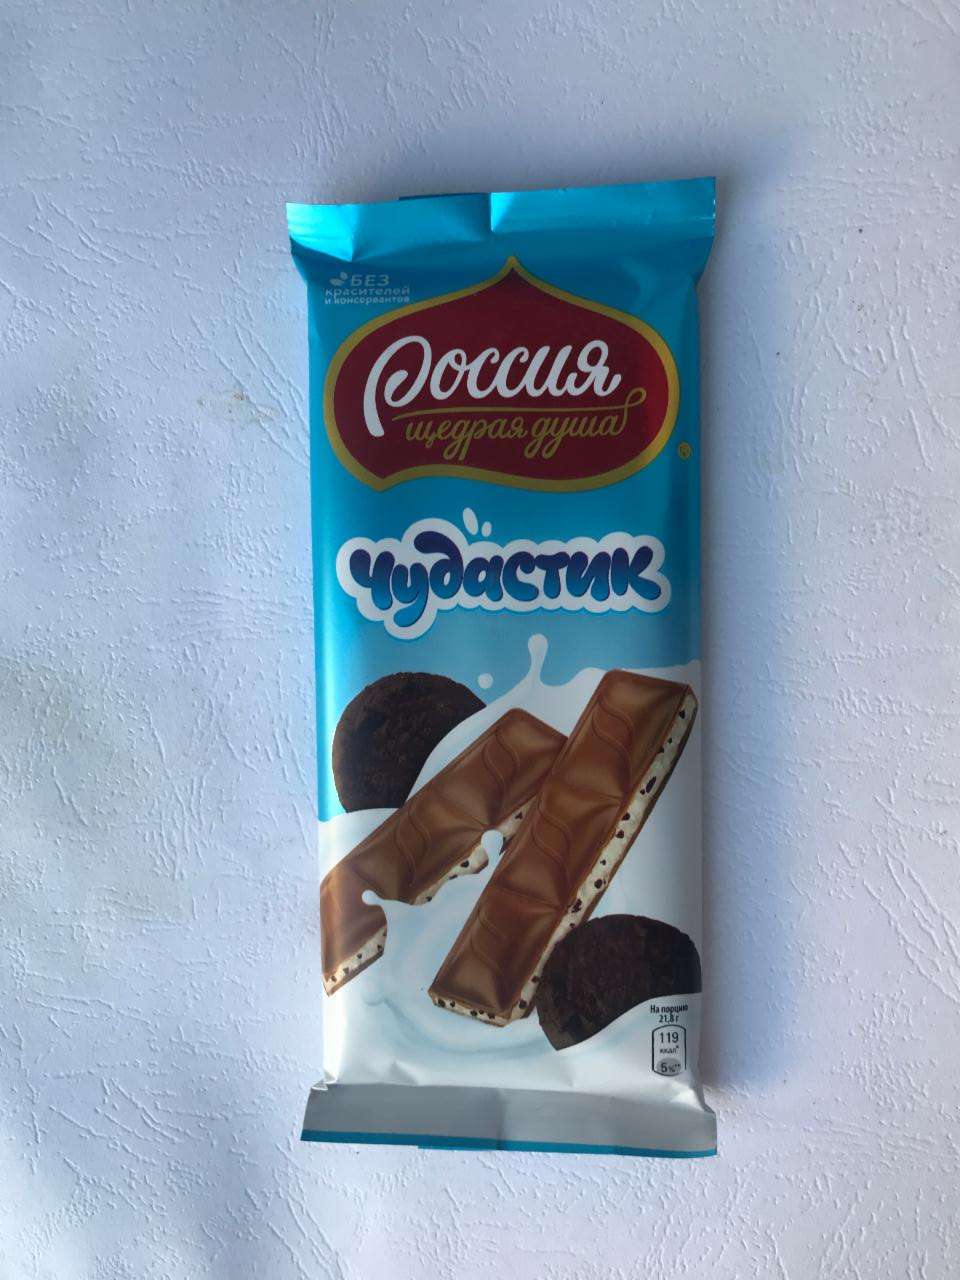 Фото - Молочный шоколад Чудастик с молочной начинкой и какао-печеньем Россия—щедрая душа!